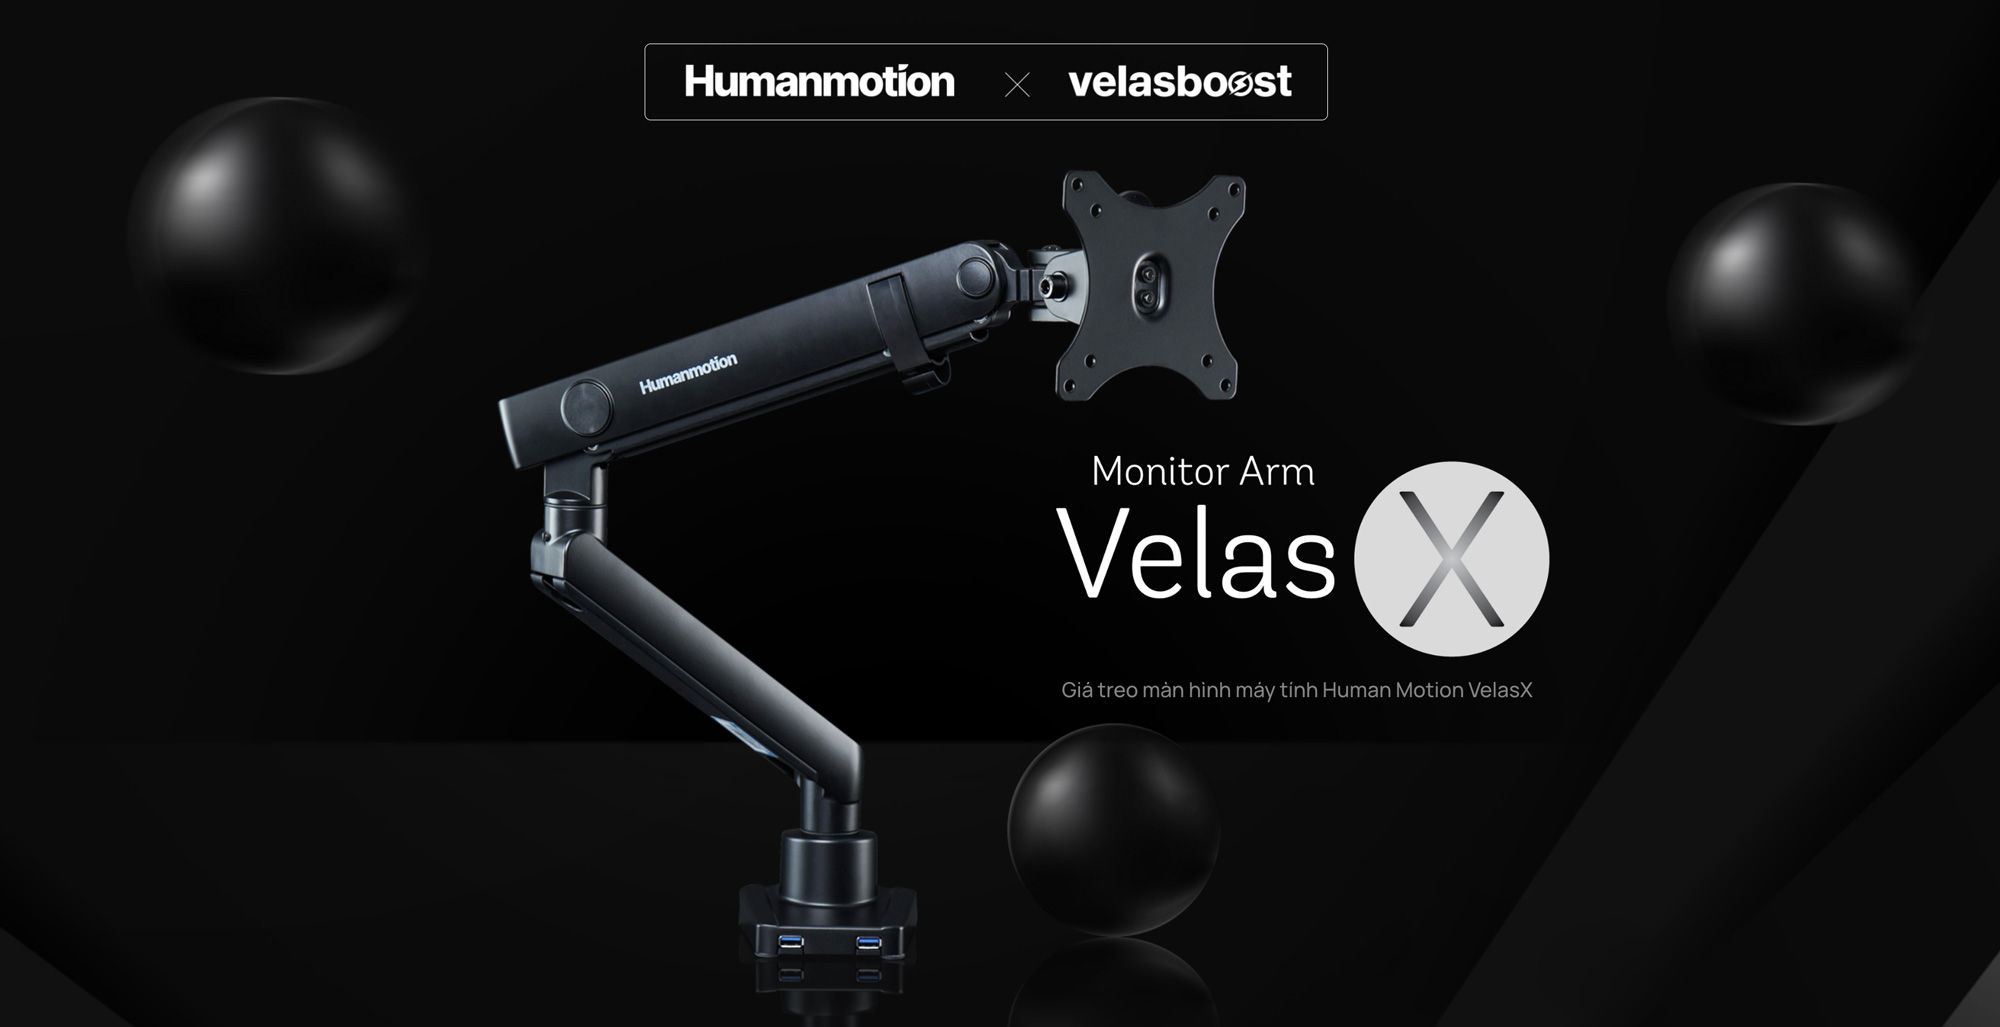 Giá treo màn hình Human Motion VelasX